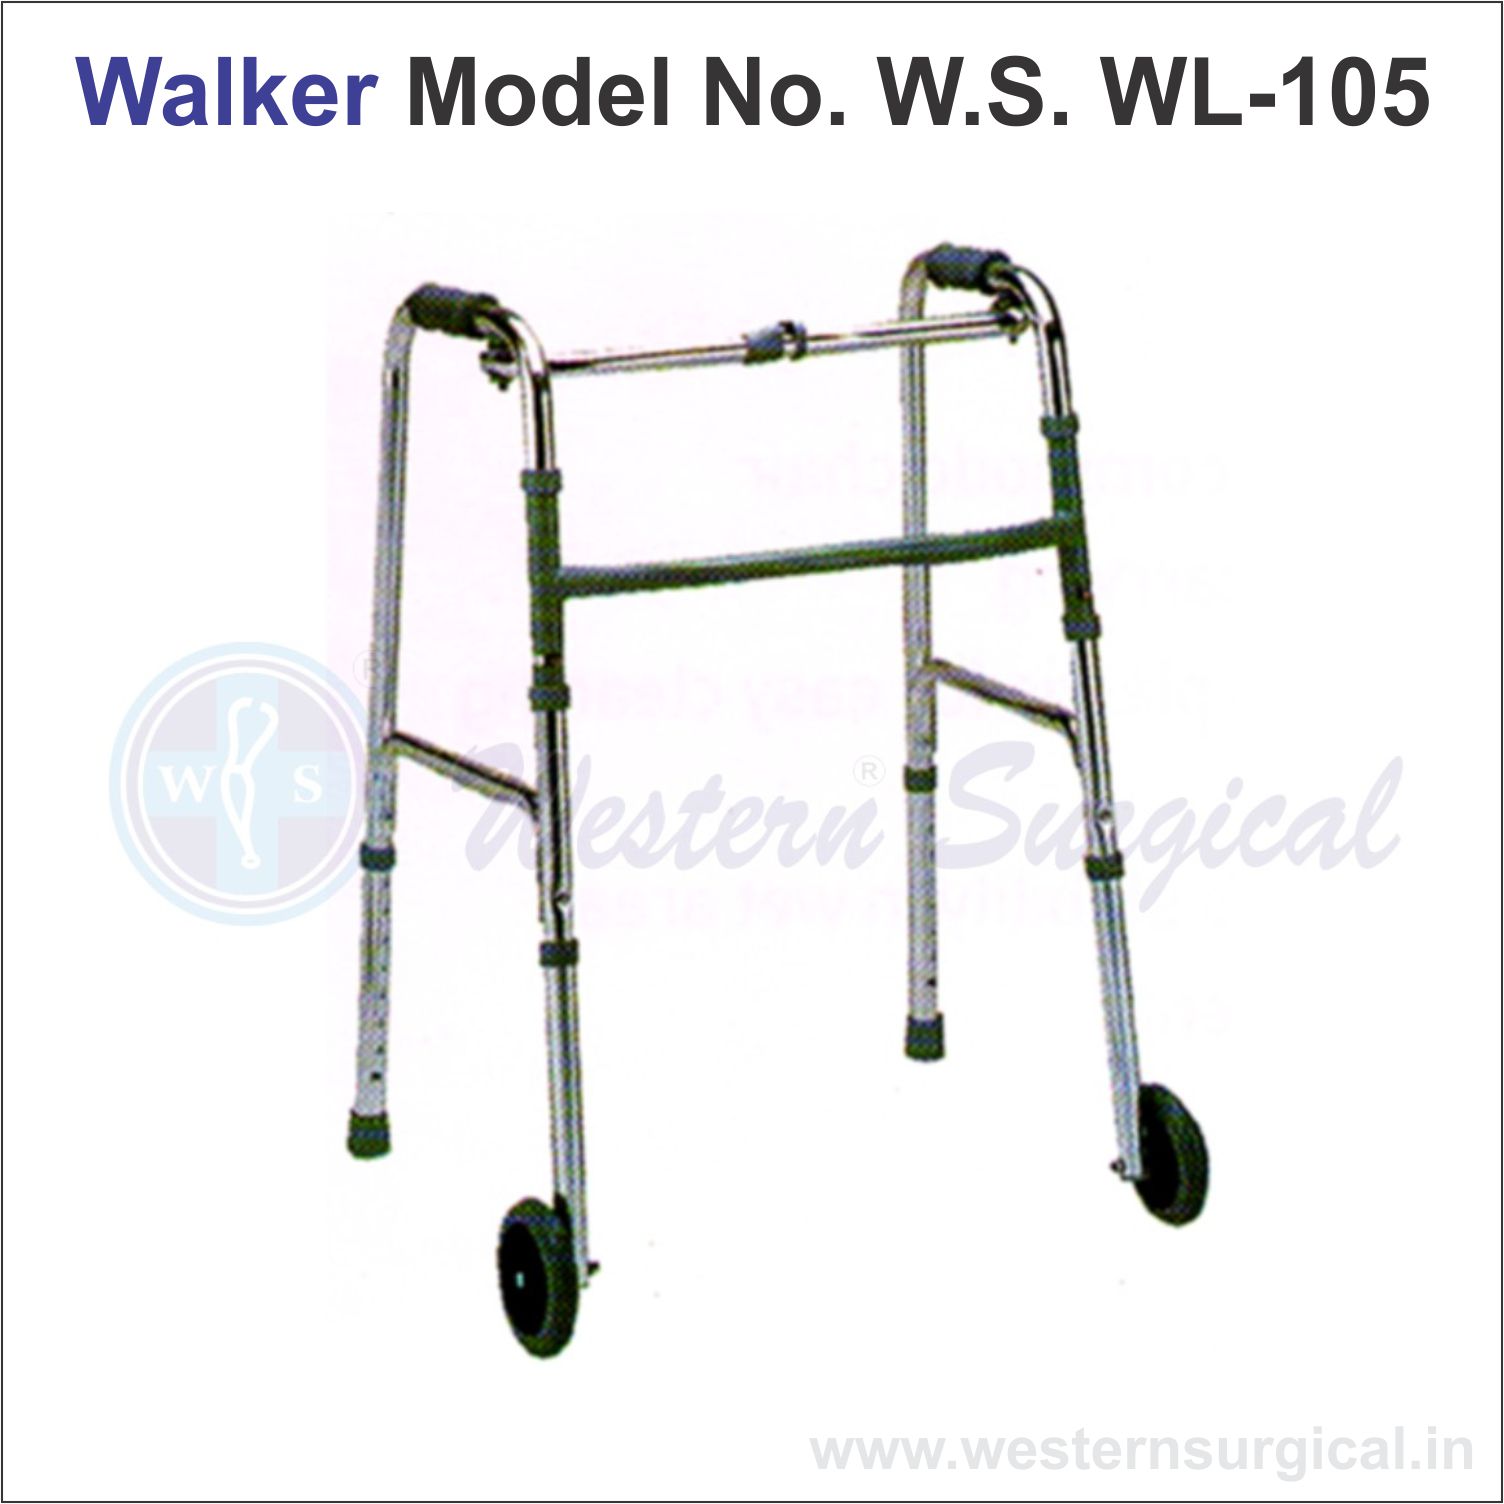 Walker Model No. W.S. WL - 105